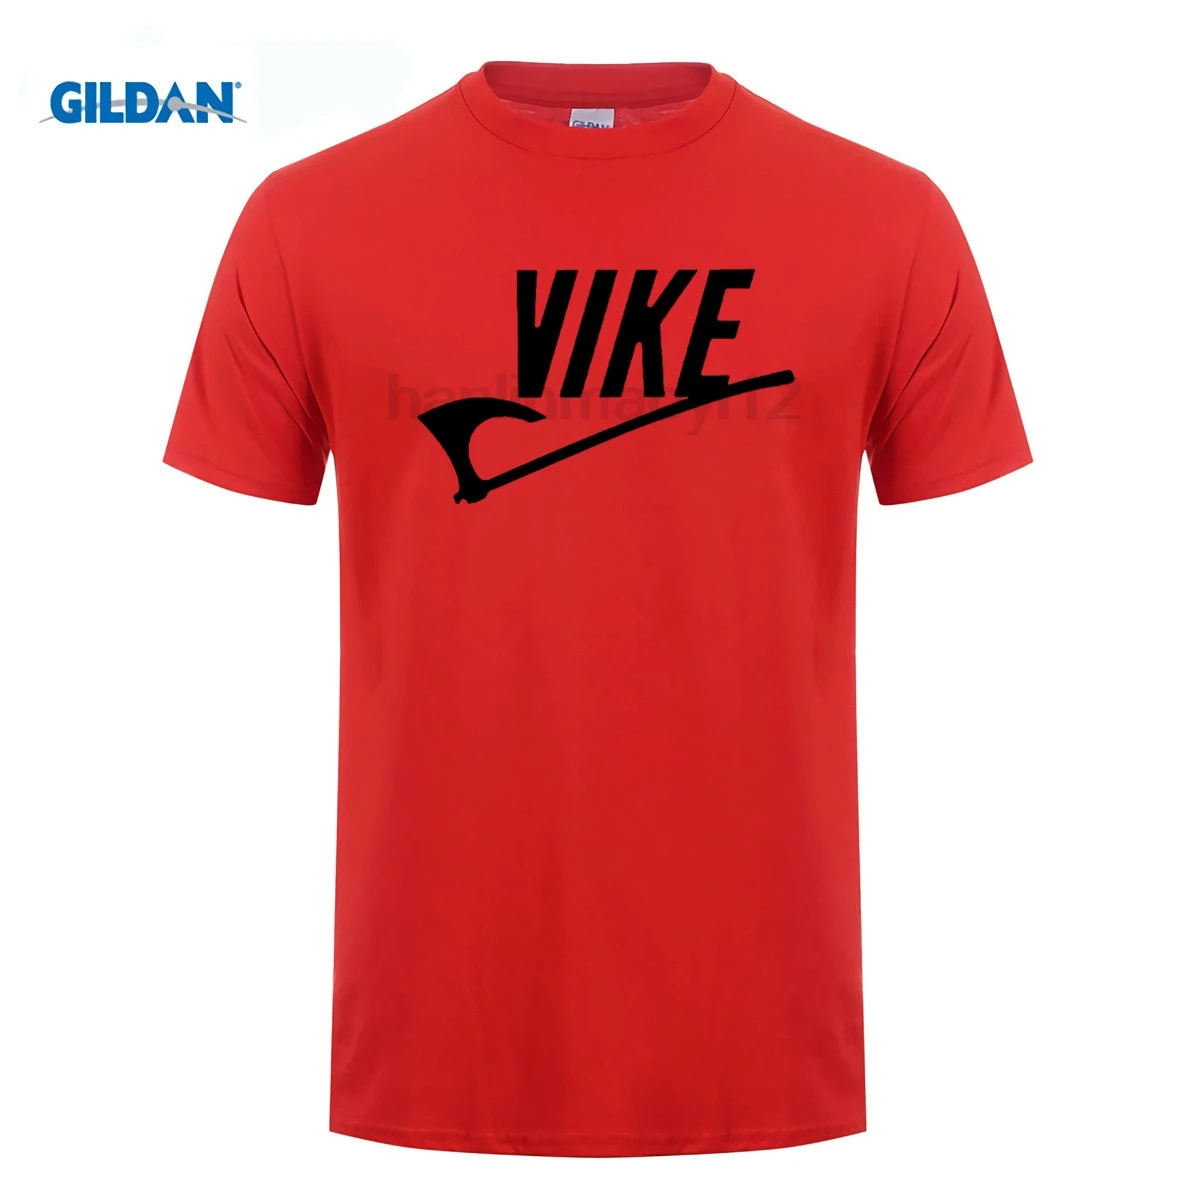 GILDAN designer t shirt Men Vike vikings norse odin nordic